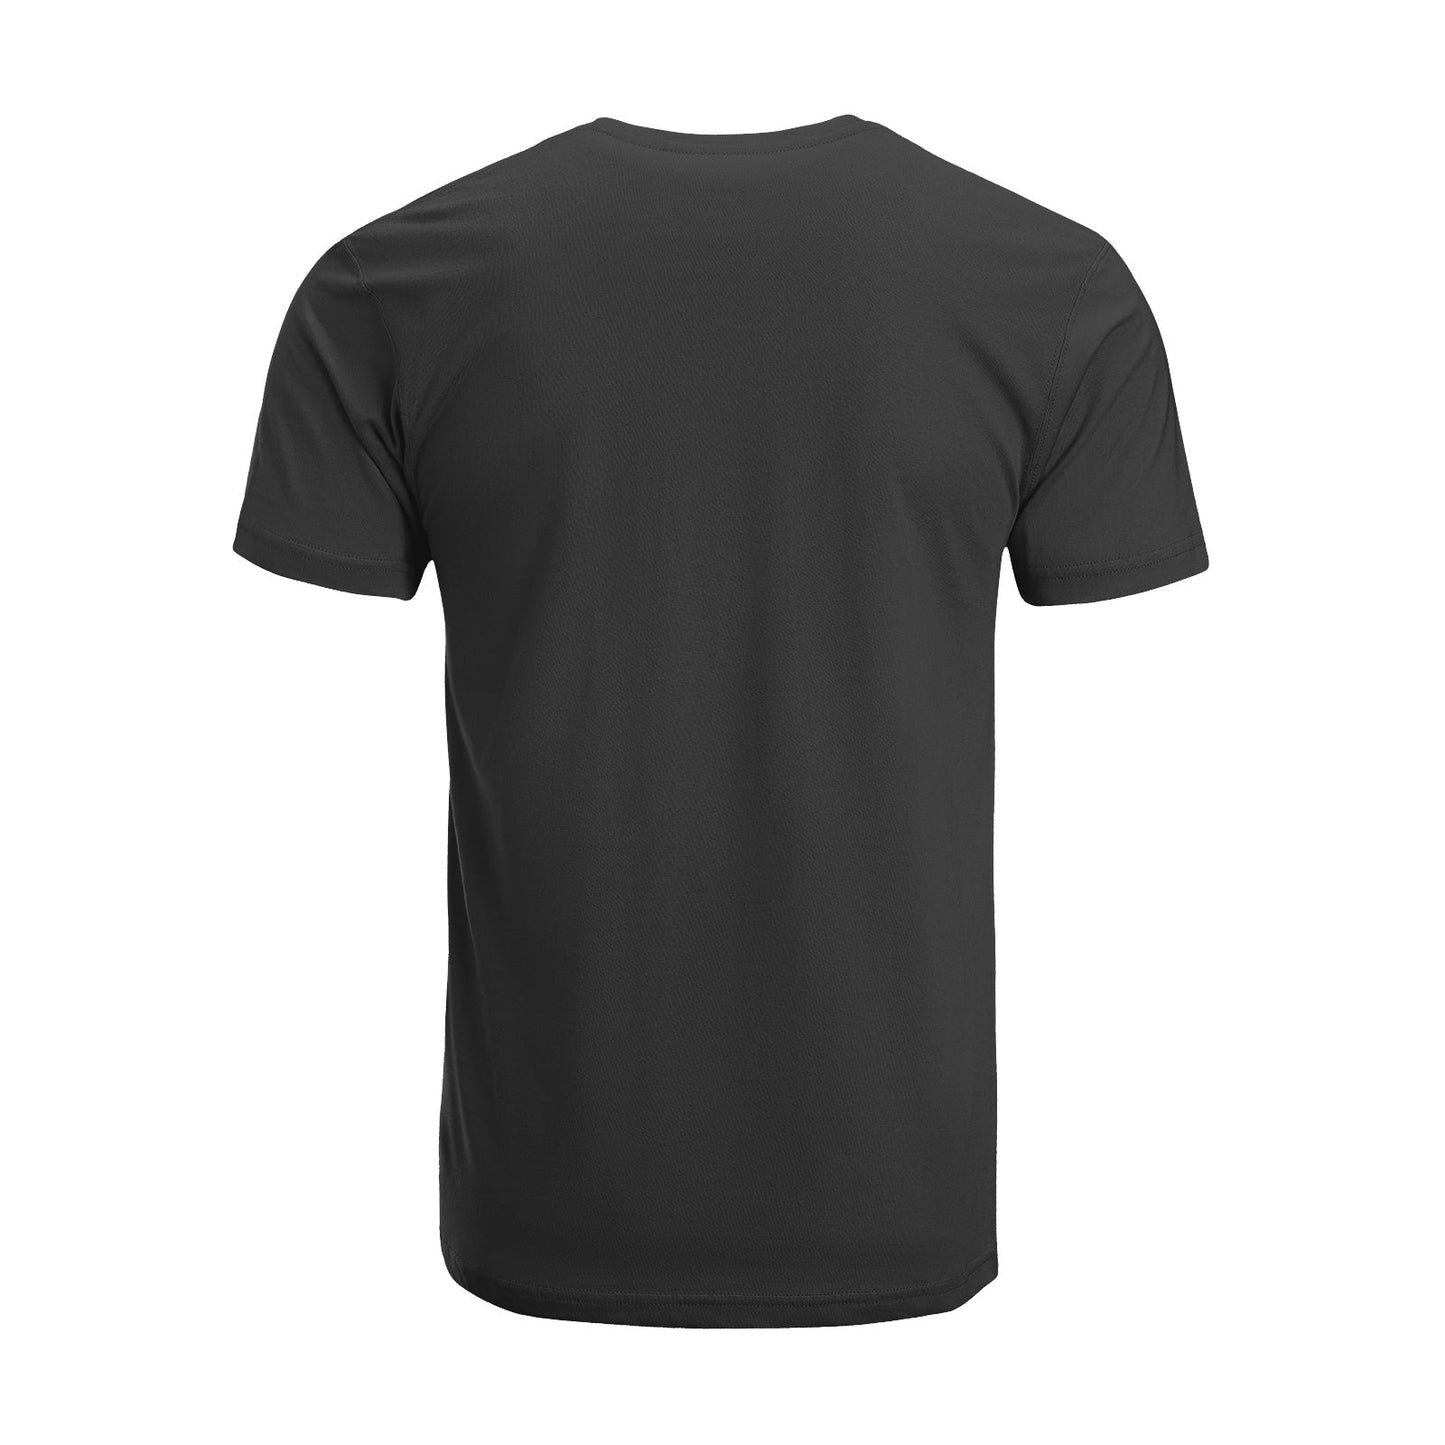 Unisex Short Sleeve Crew Neck Cotton Jersey T-Shirt TRUCK 27